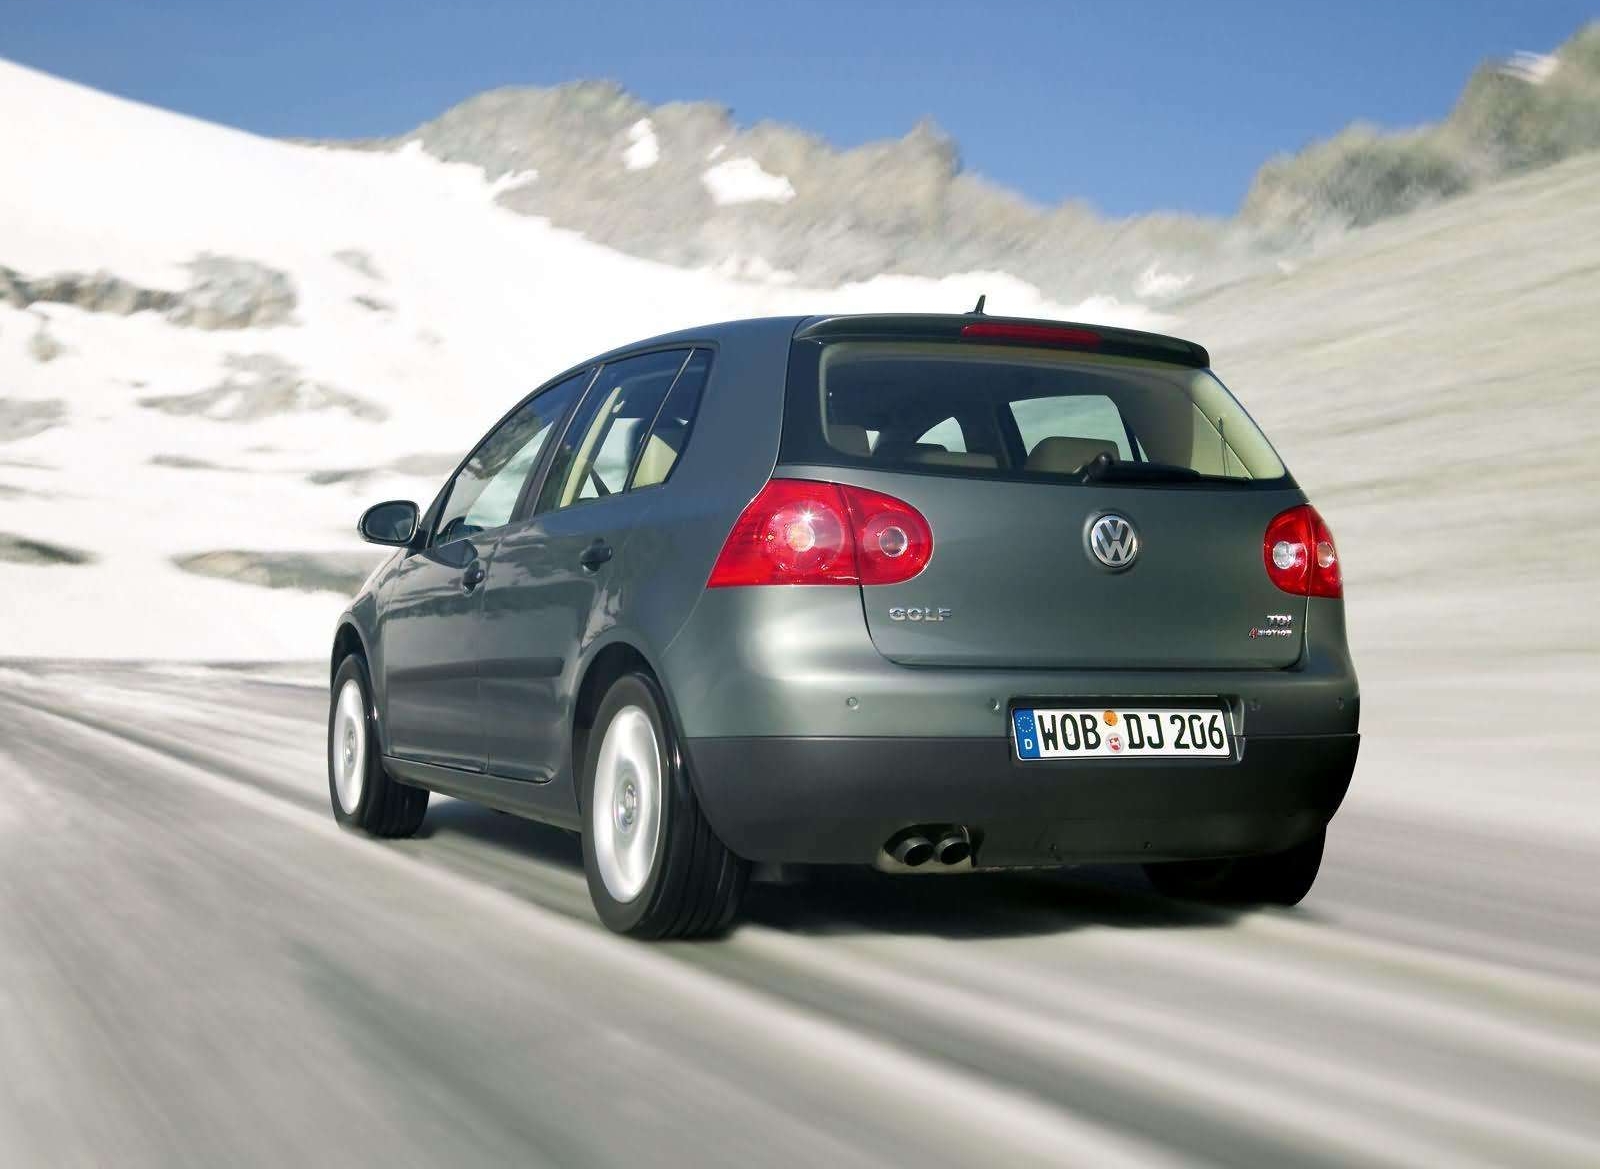 VW Golf 5 Hatchback Go Rent Cluj car rental service